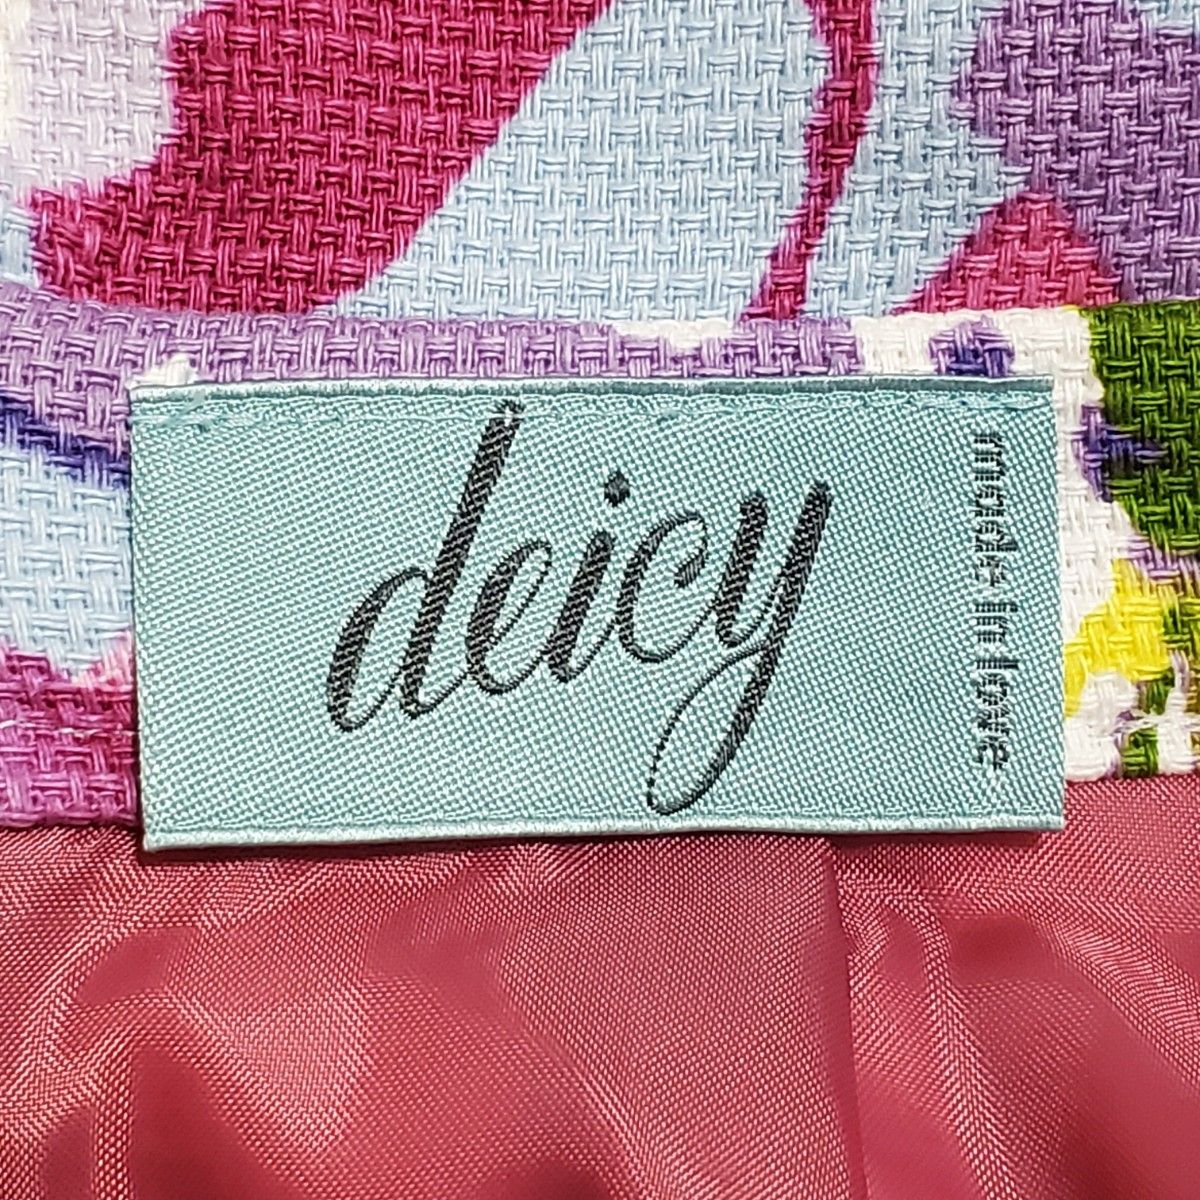 deicy ディシー スカート 花柄 フラワー 日本製 0サイズ レディース Sサイズ ピンク系 総柄 ミニスカート